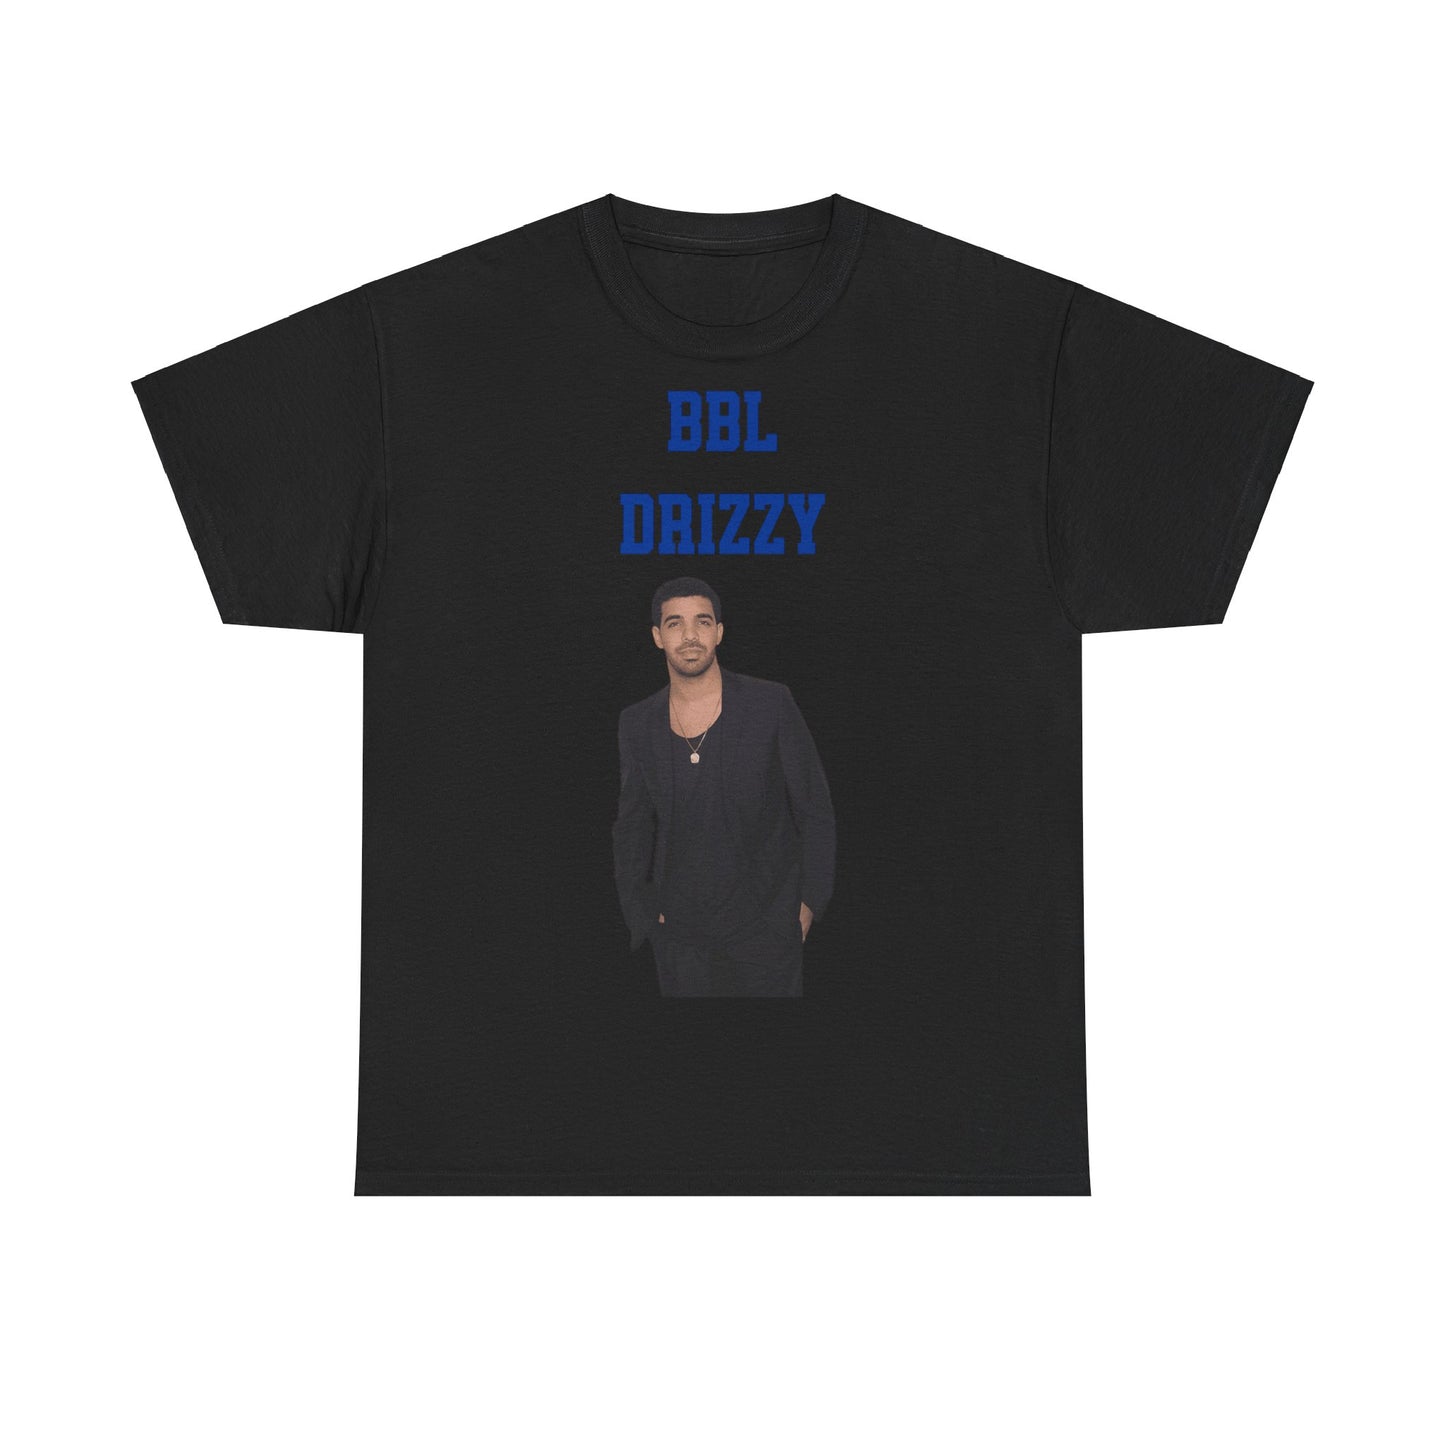 Drake BBL Drizzy Shirt zeigt Rapper Drake Porträt, Metro Boomin Beef Lyrics. Streetwear Merch, Hip-Hop Musik Merchandise.